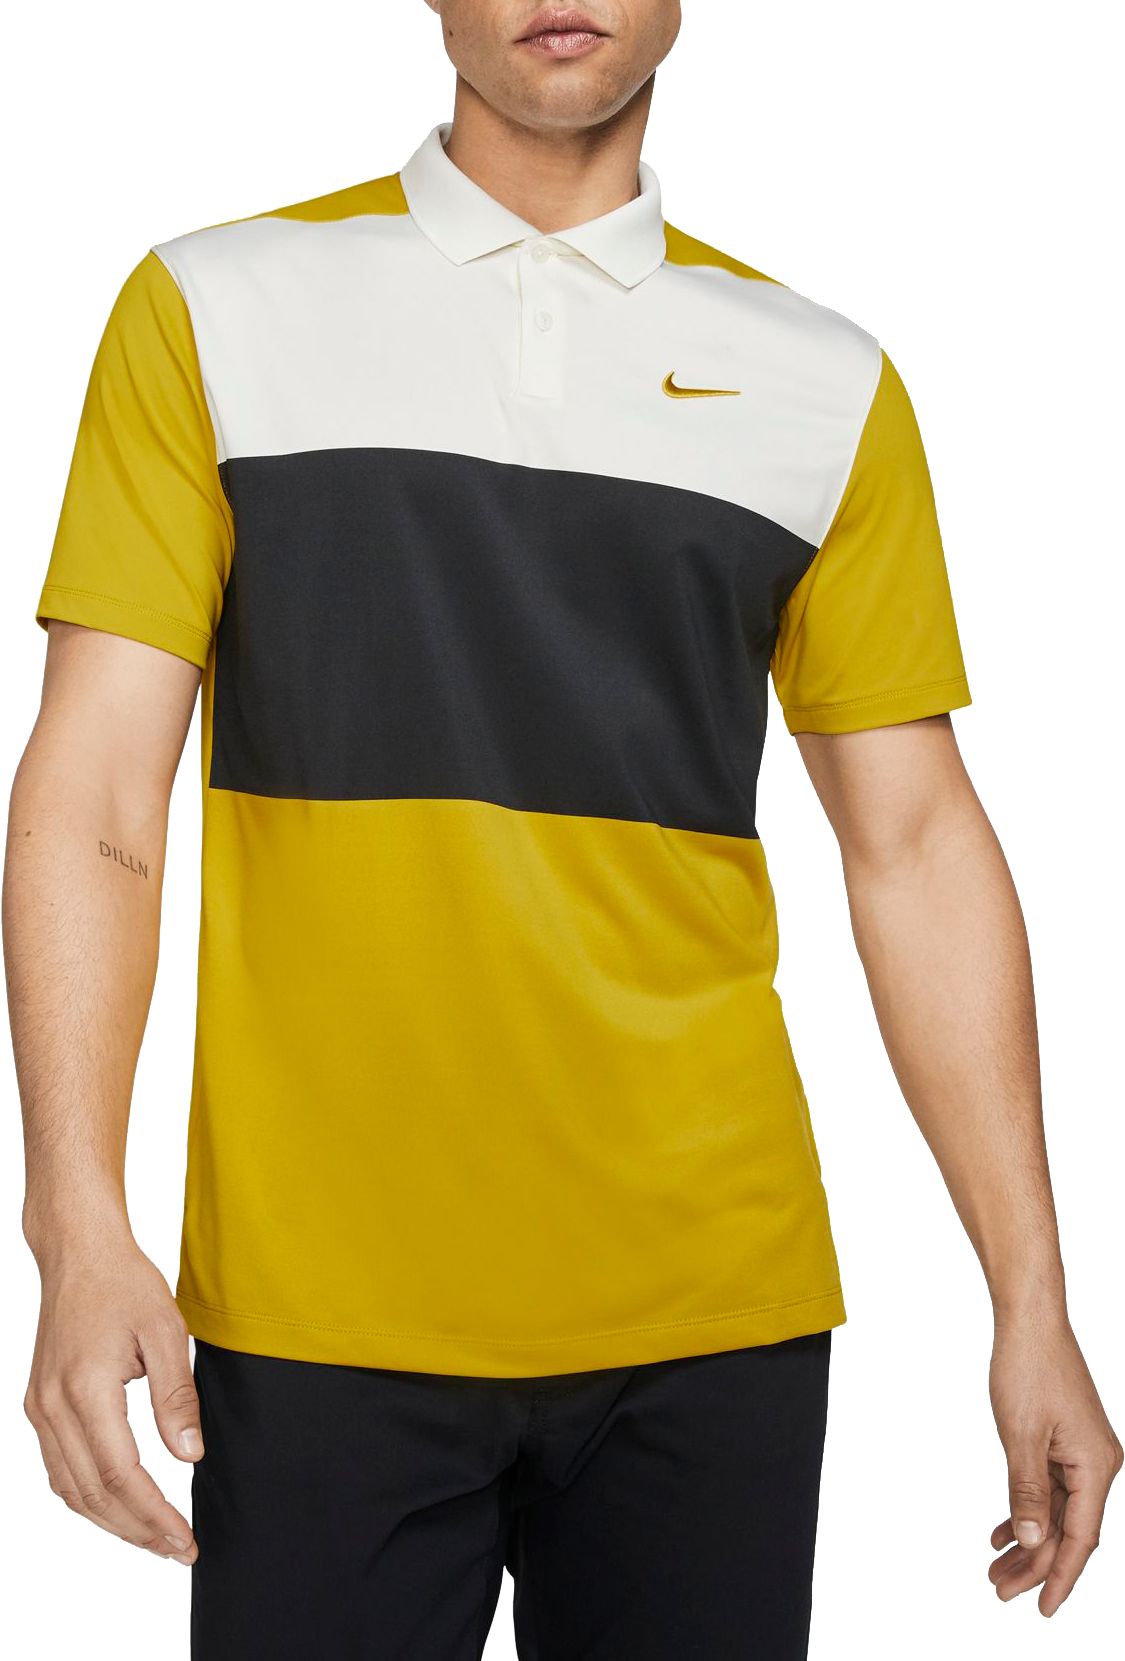 Nike Men's Vapor Color Block Golf Polo - .97